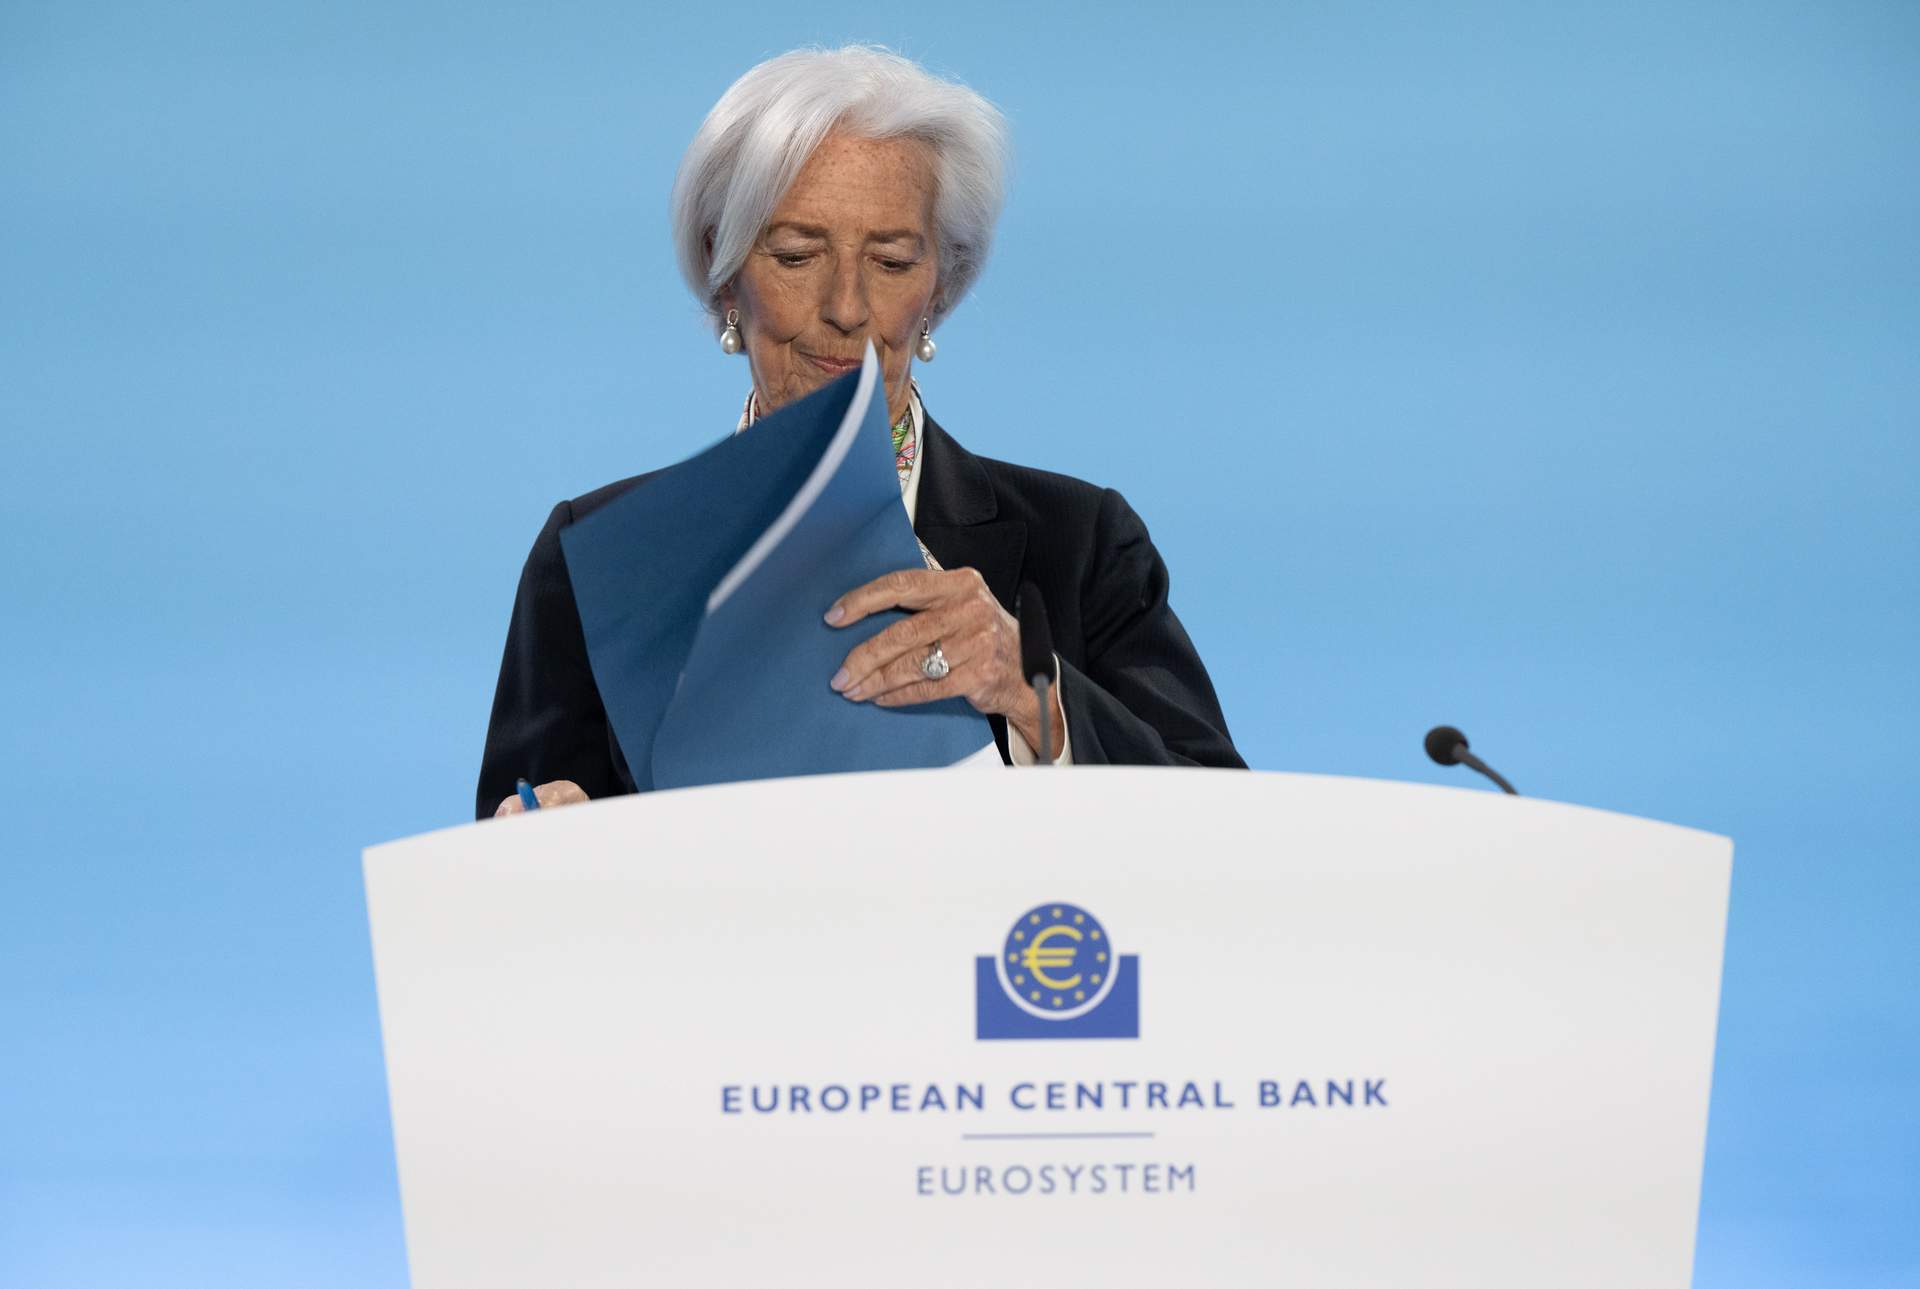 El mercado apunta a junio para la primera bajada de tipos del BCE tras las palabras de Lagarde